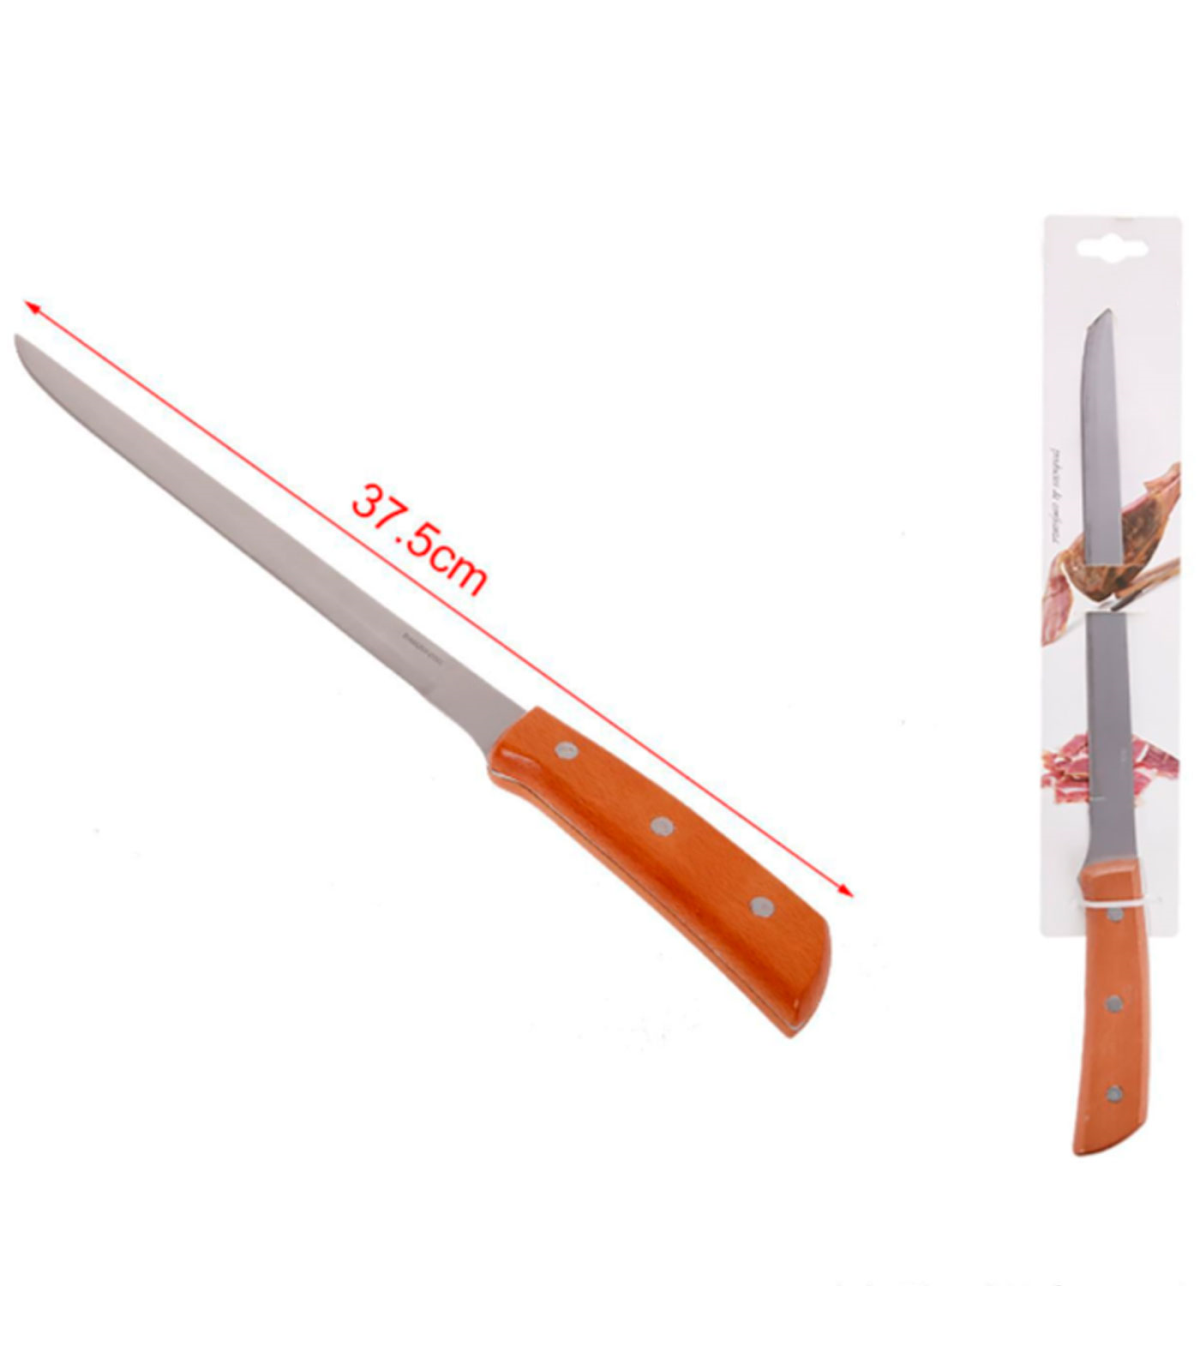 Tradineur - Cuchillo jamonero con mango de madera y hoja de acero  inoxidable de 24,5 cm, cuchillo para cortado de jamón, corte p